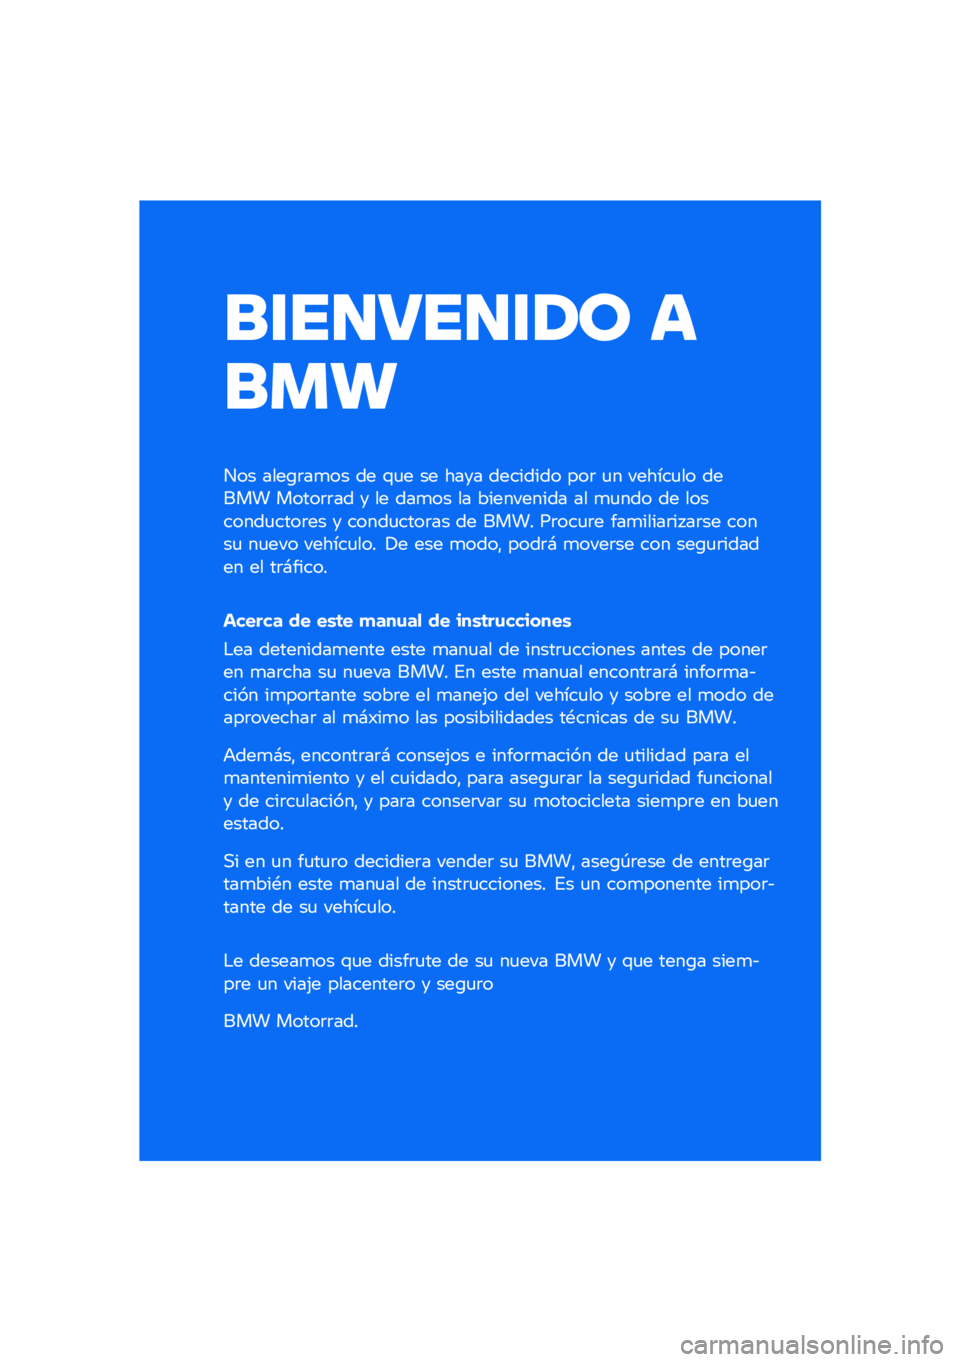 BMW MOTORRAD F 900 R 2020  Manual de instrucciones (in Spanish) ����������\b �	
��
�
��� ����\b�	��
�� �� �\f�
� �� ���� �������� ���	 �
� ������
�� ����� �����	�	�� � �� ���
�� �� ��������